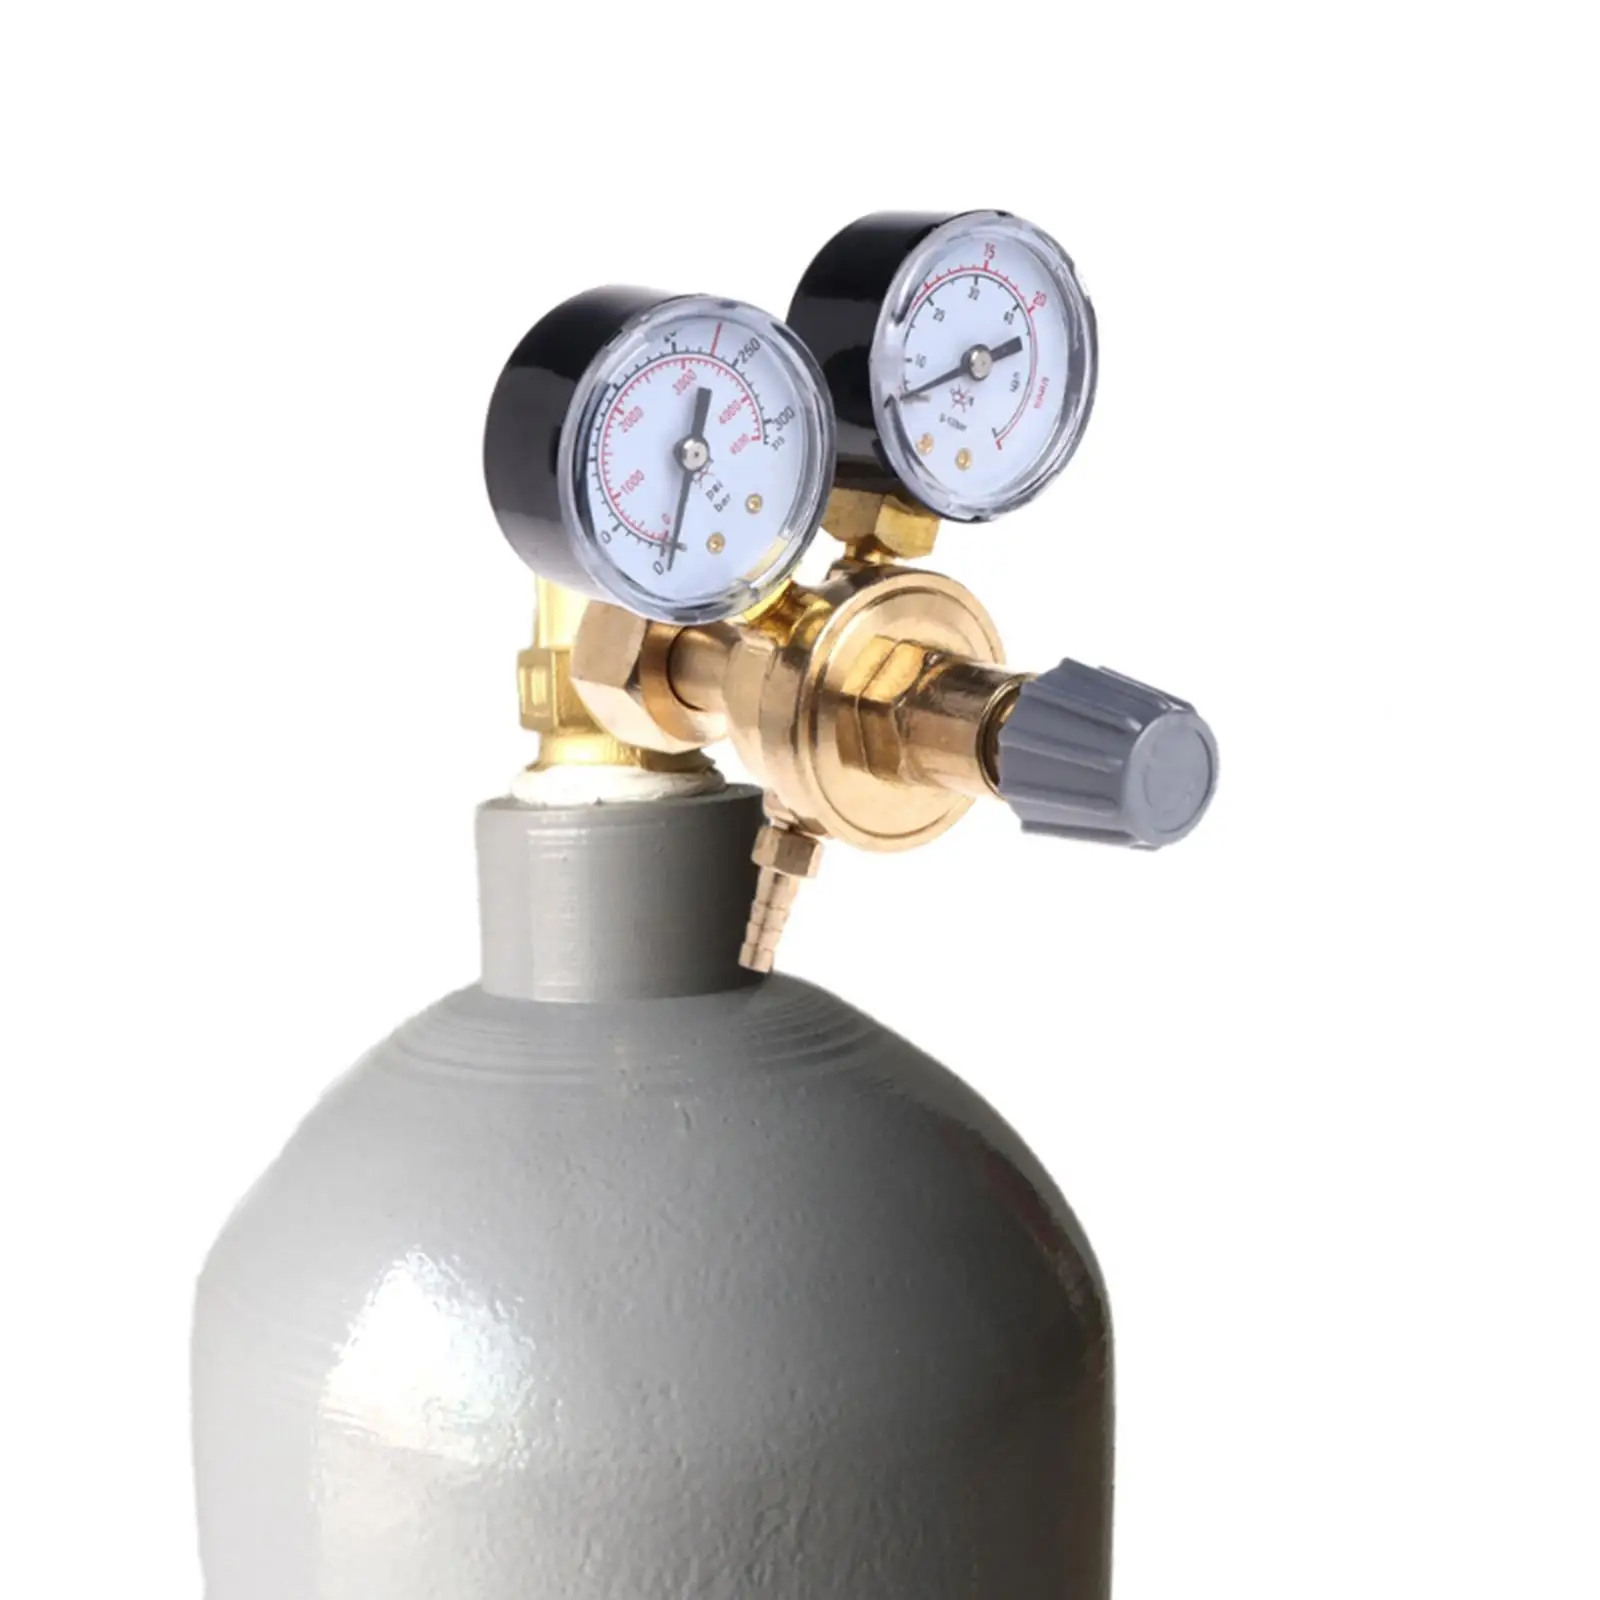 Argon CO2 Gauges Pressure Reducer Mig Flow Meter Pressure Reducer